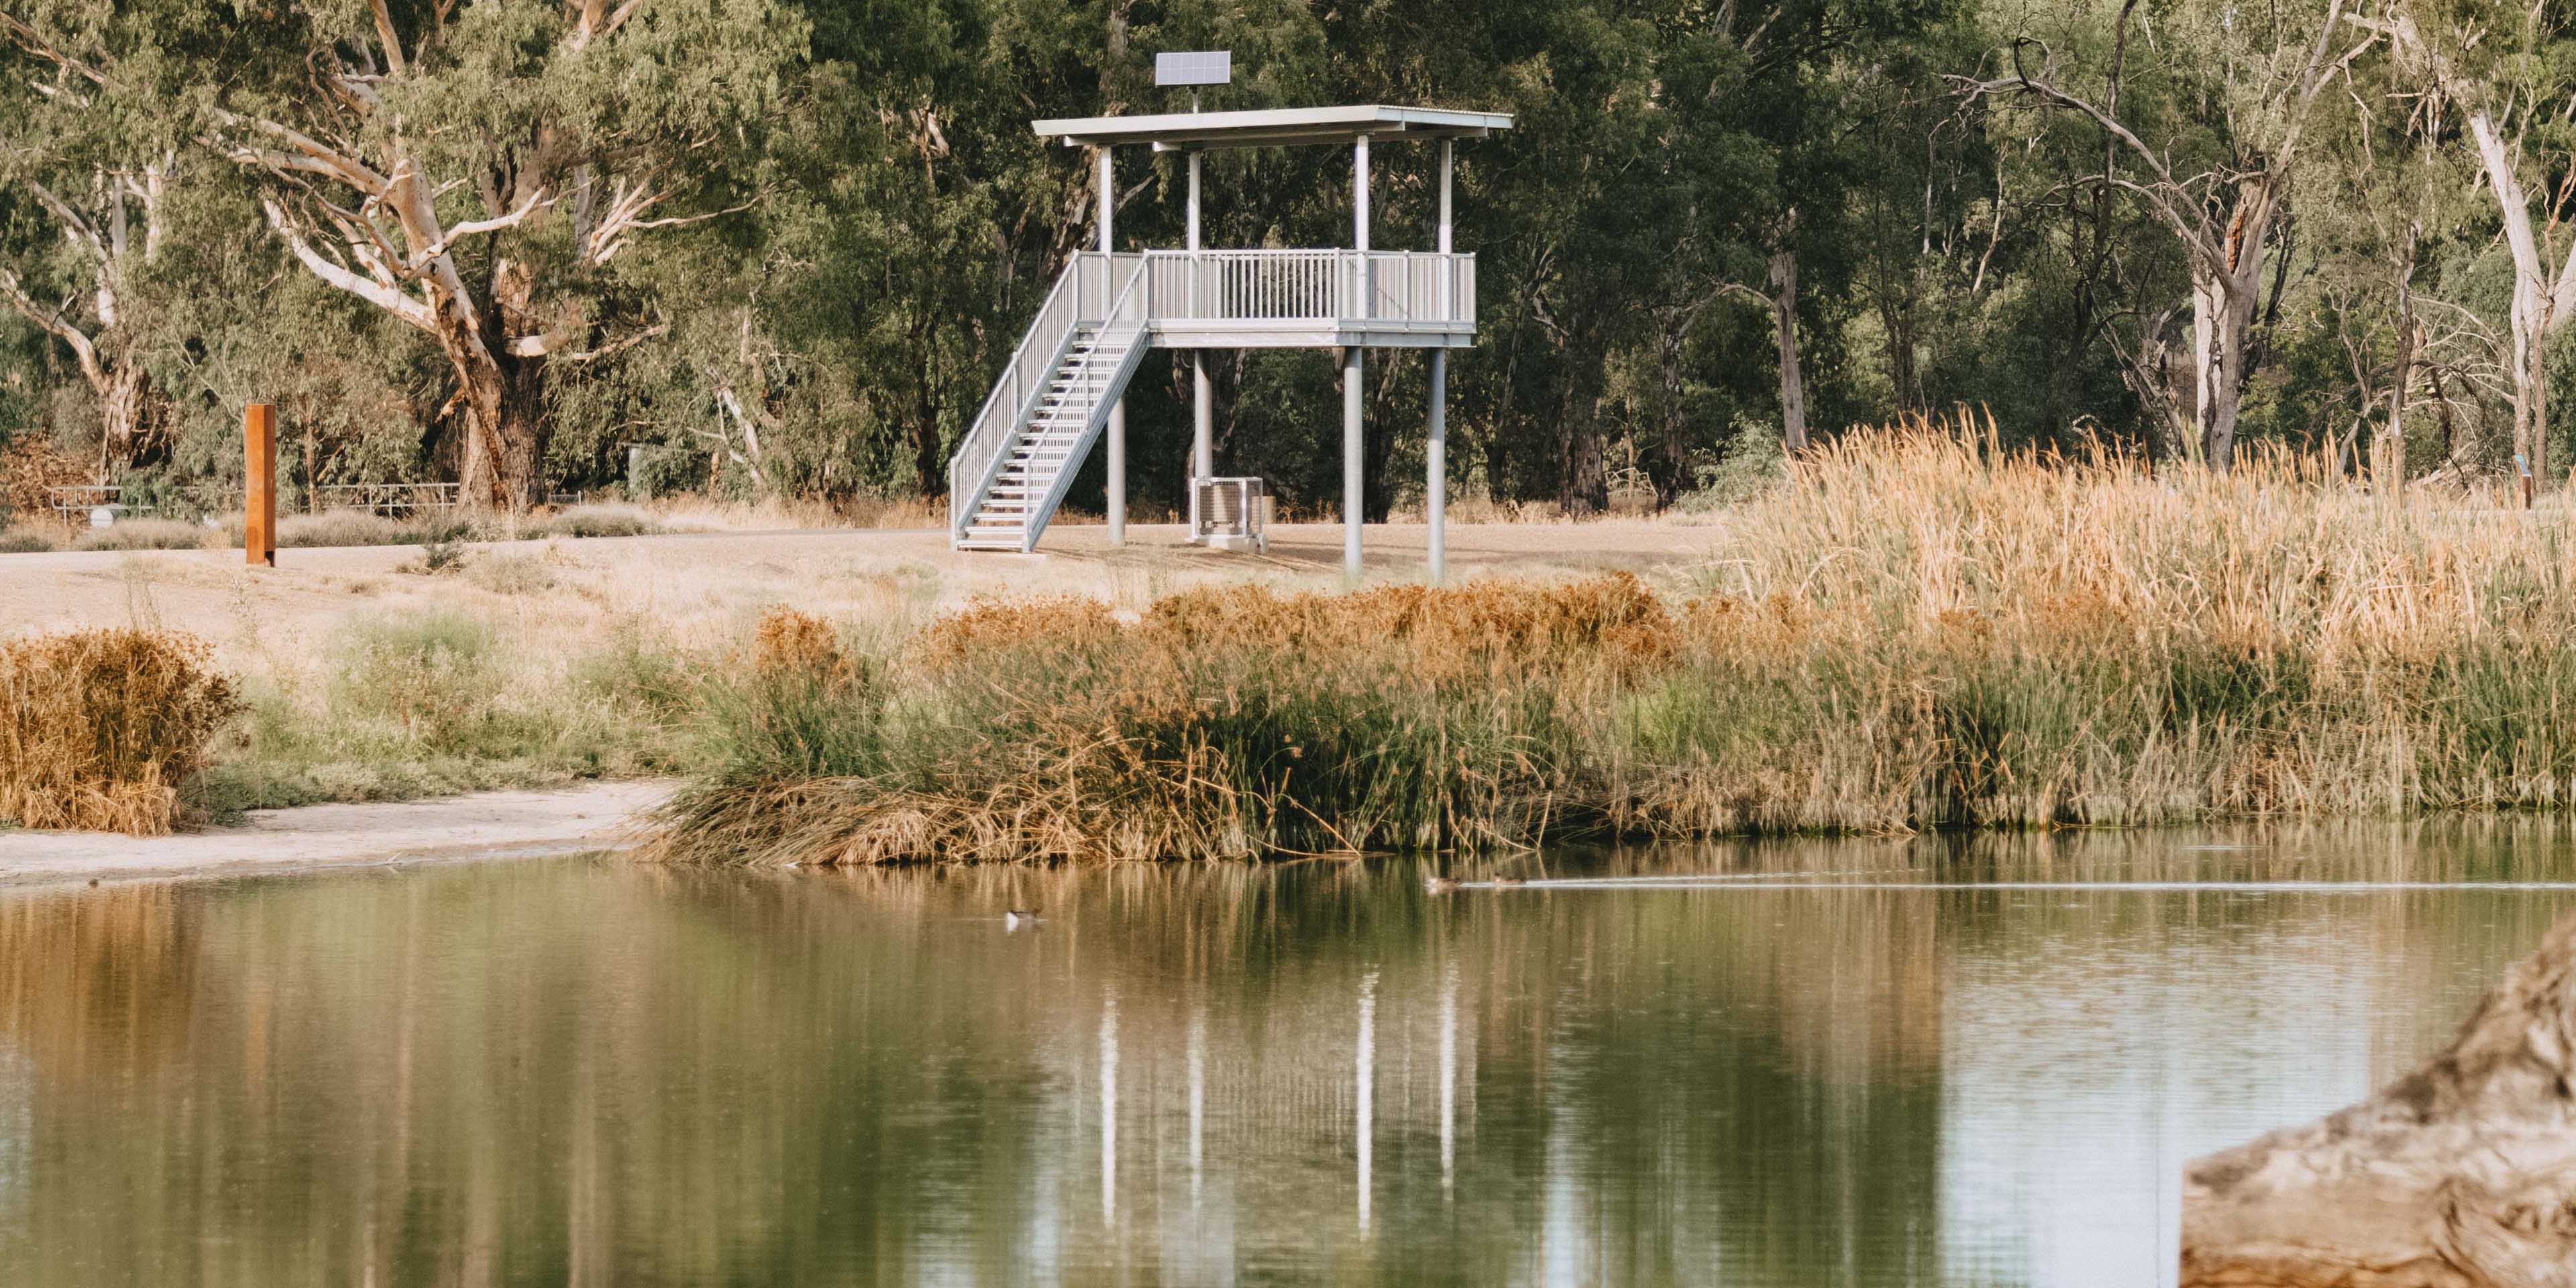 Viewing platform and water ponds at Marrambidya Wetland in Wagga Wagga 